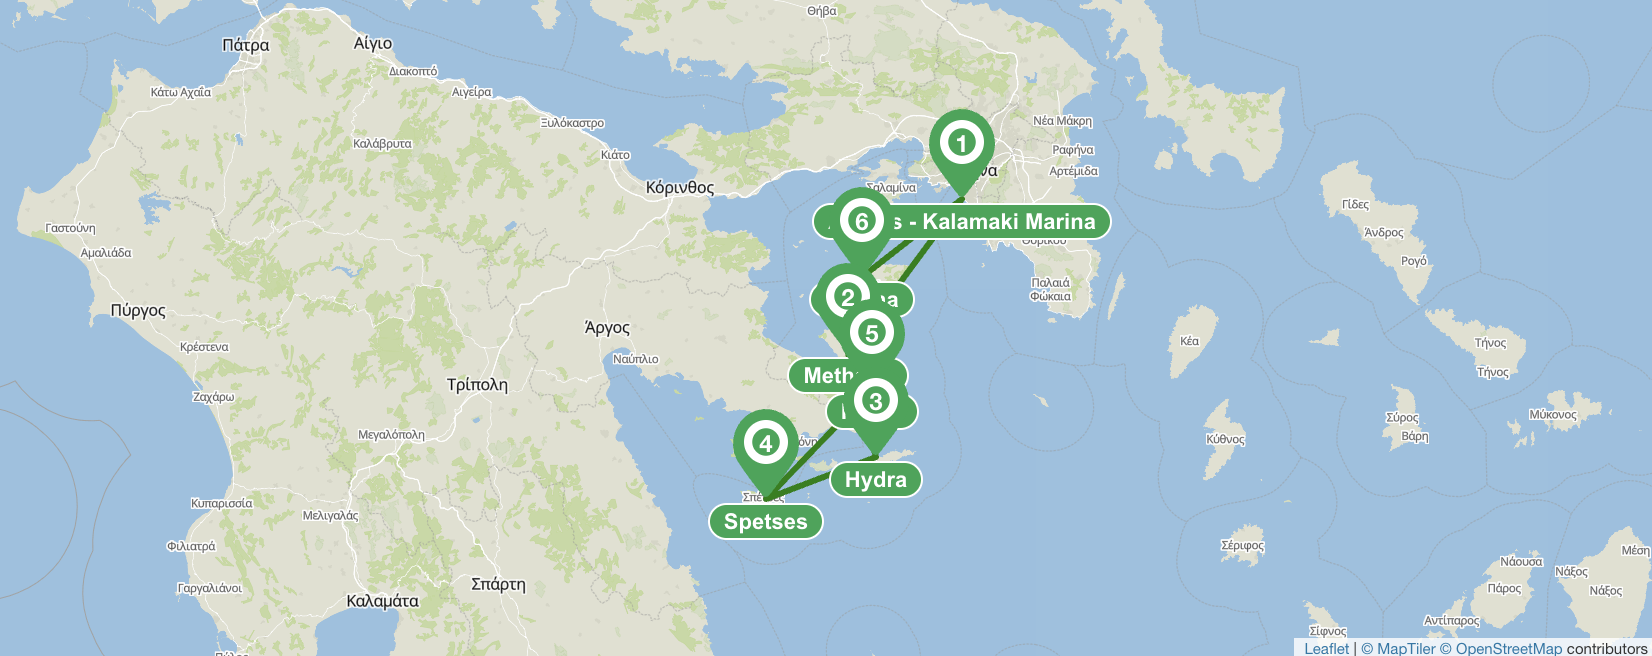 Athènes: itinéraire de 7 jours vers le golfe Saronique